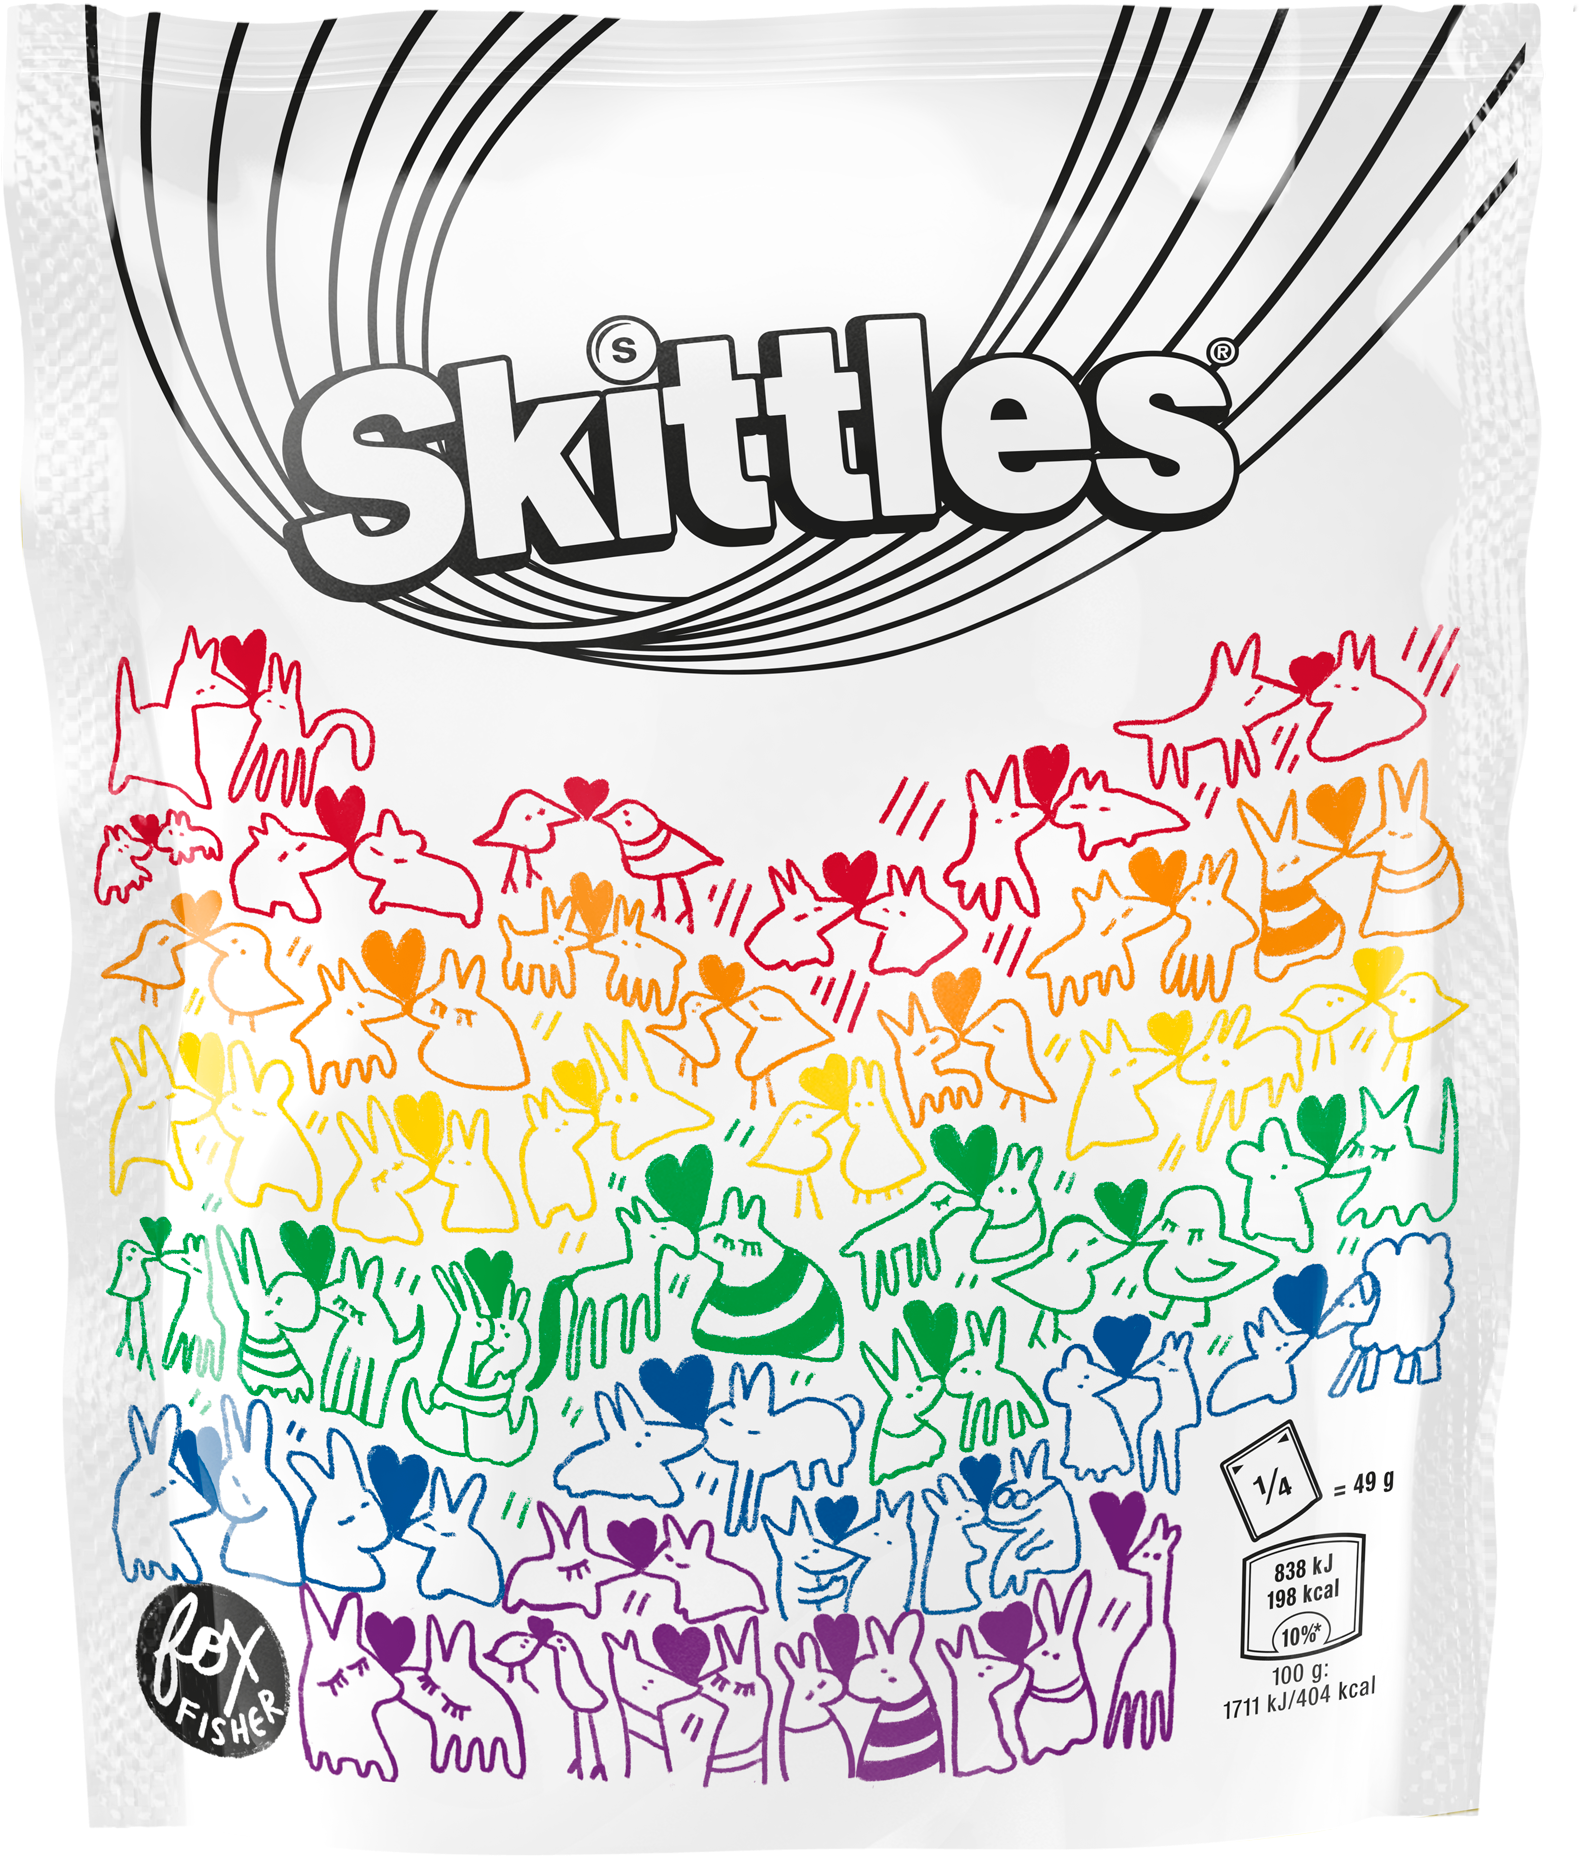 Skittles Package Artwork PNG image